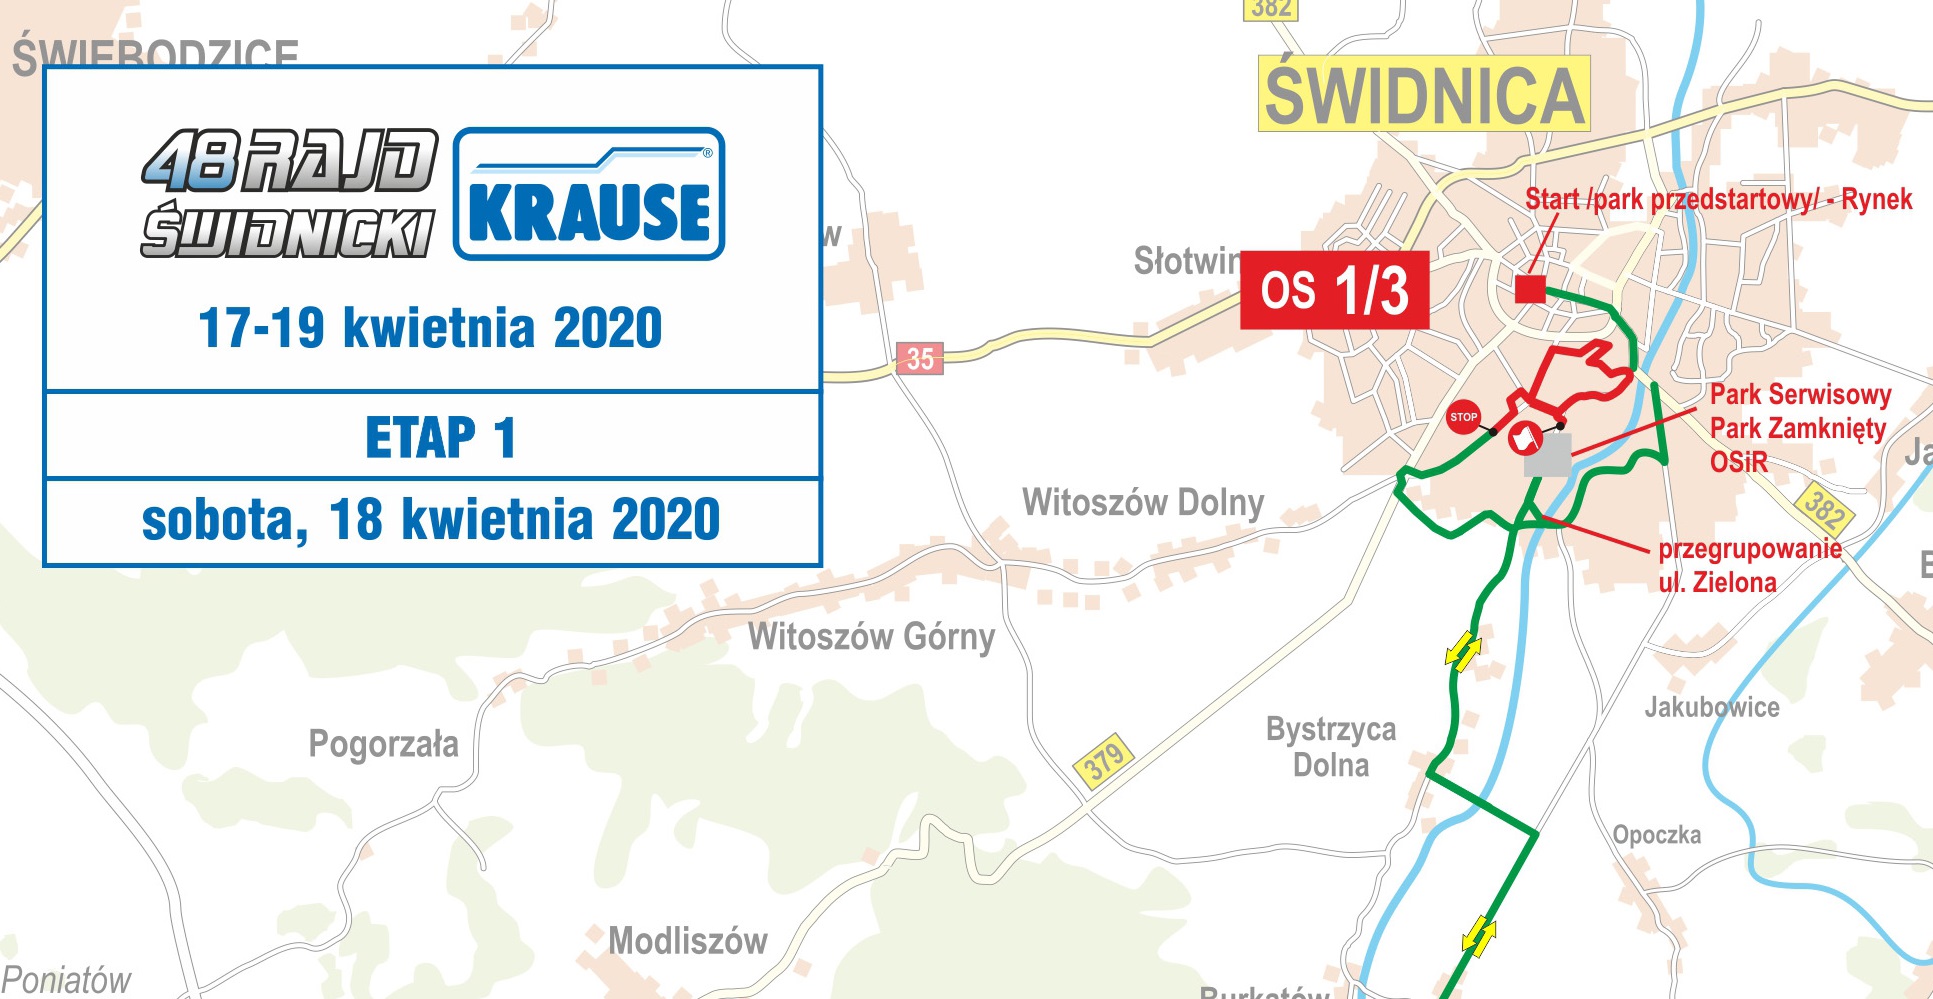 Mapy 48. Rajdu Świdnickiego – KRAUSE 2020